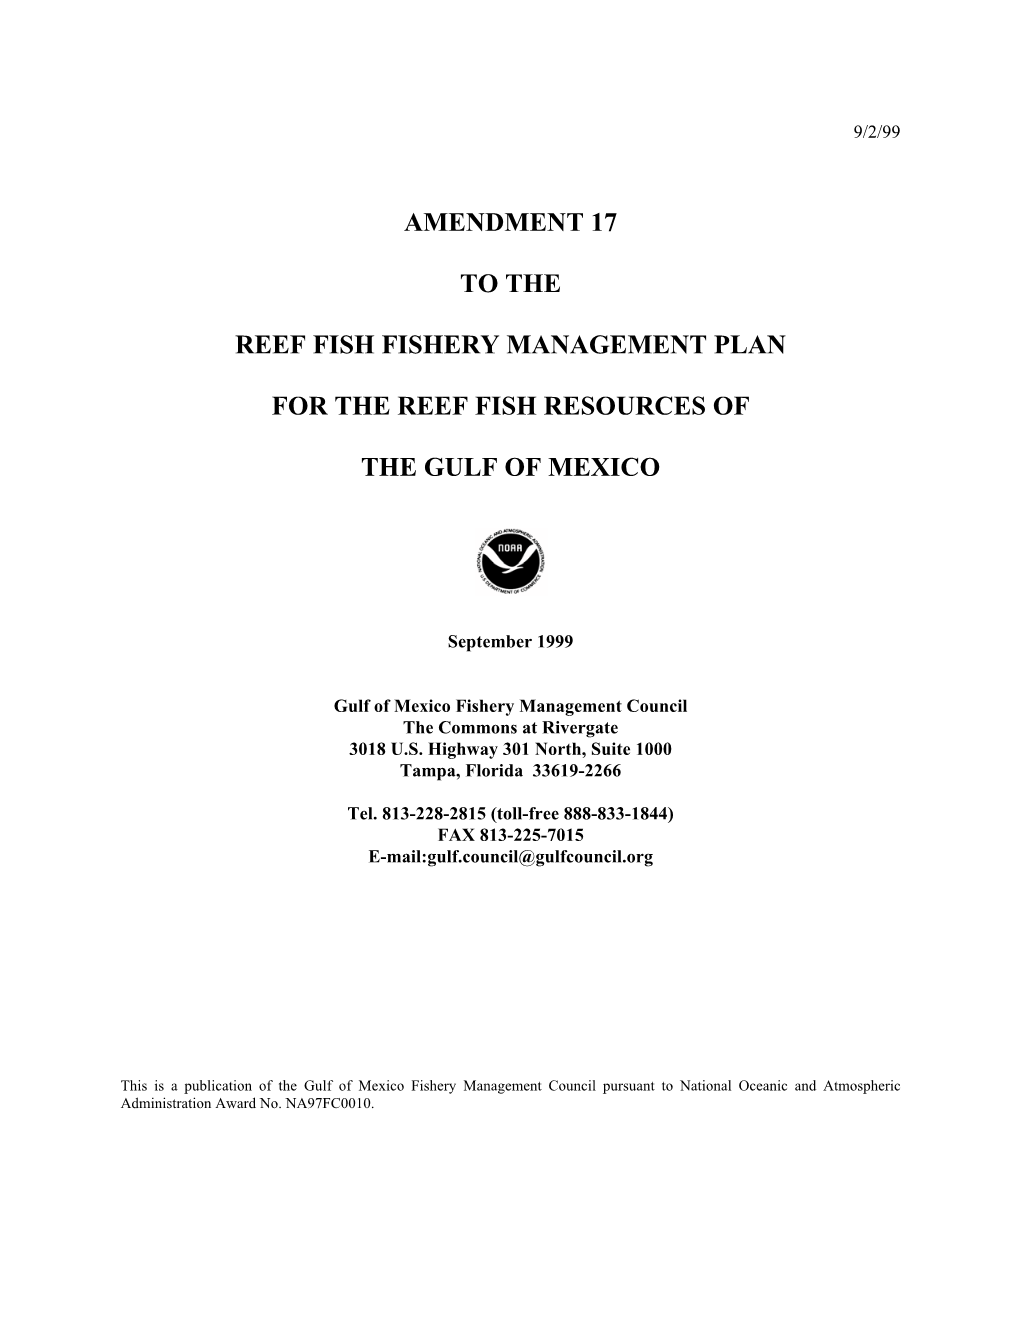 Reef Fish Amendment 17